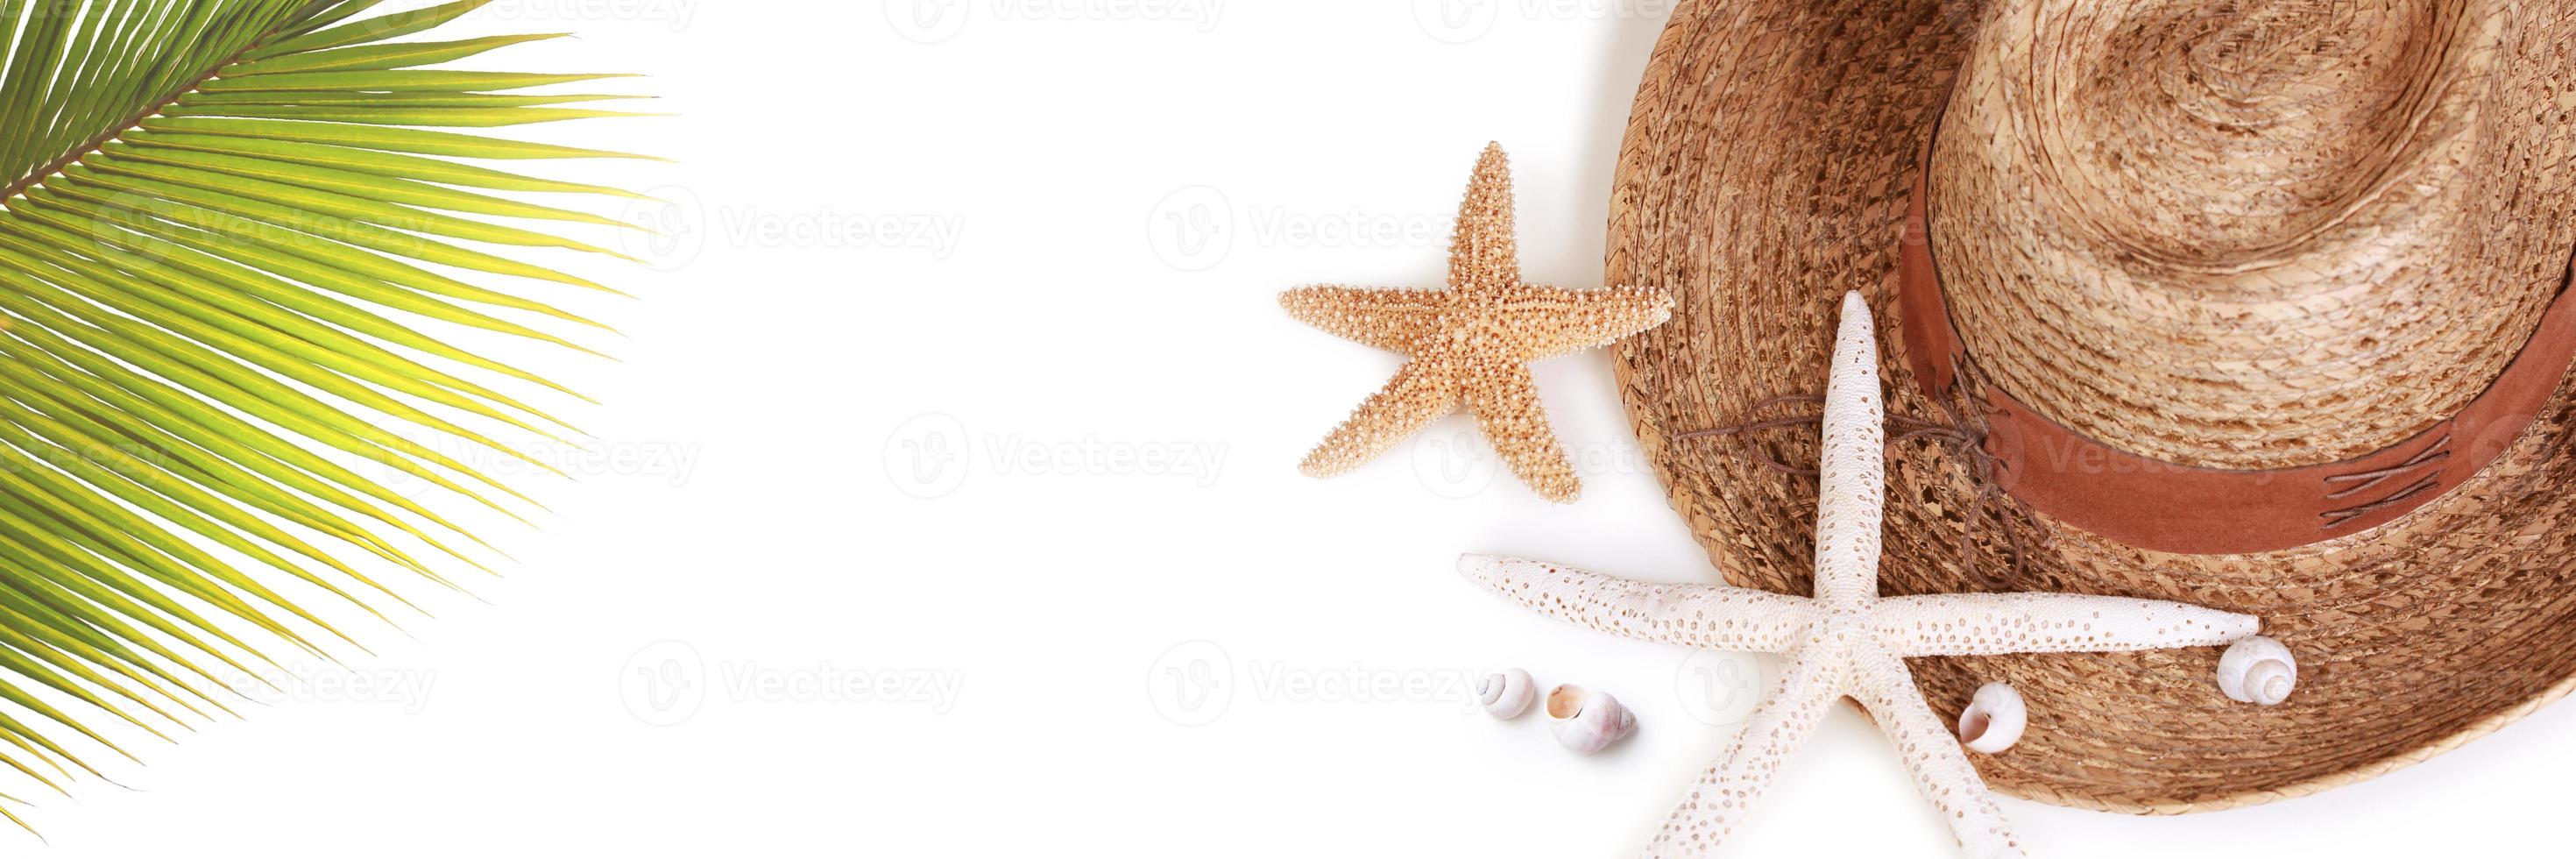 concetto nautico con foglia di palma, cappello da spiaggia, stelle marine e ananas. foto